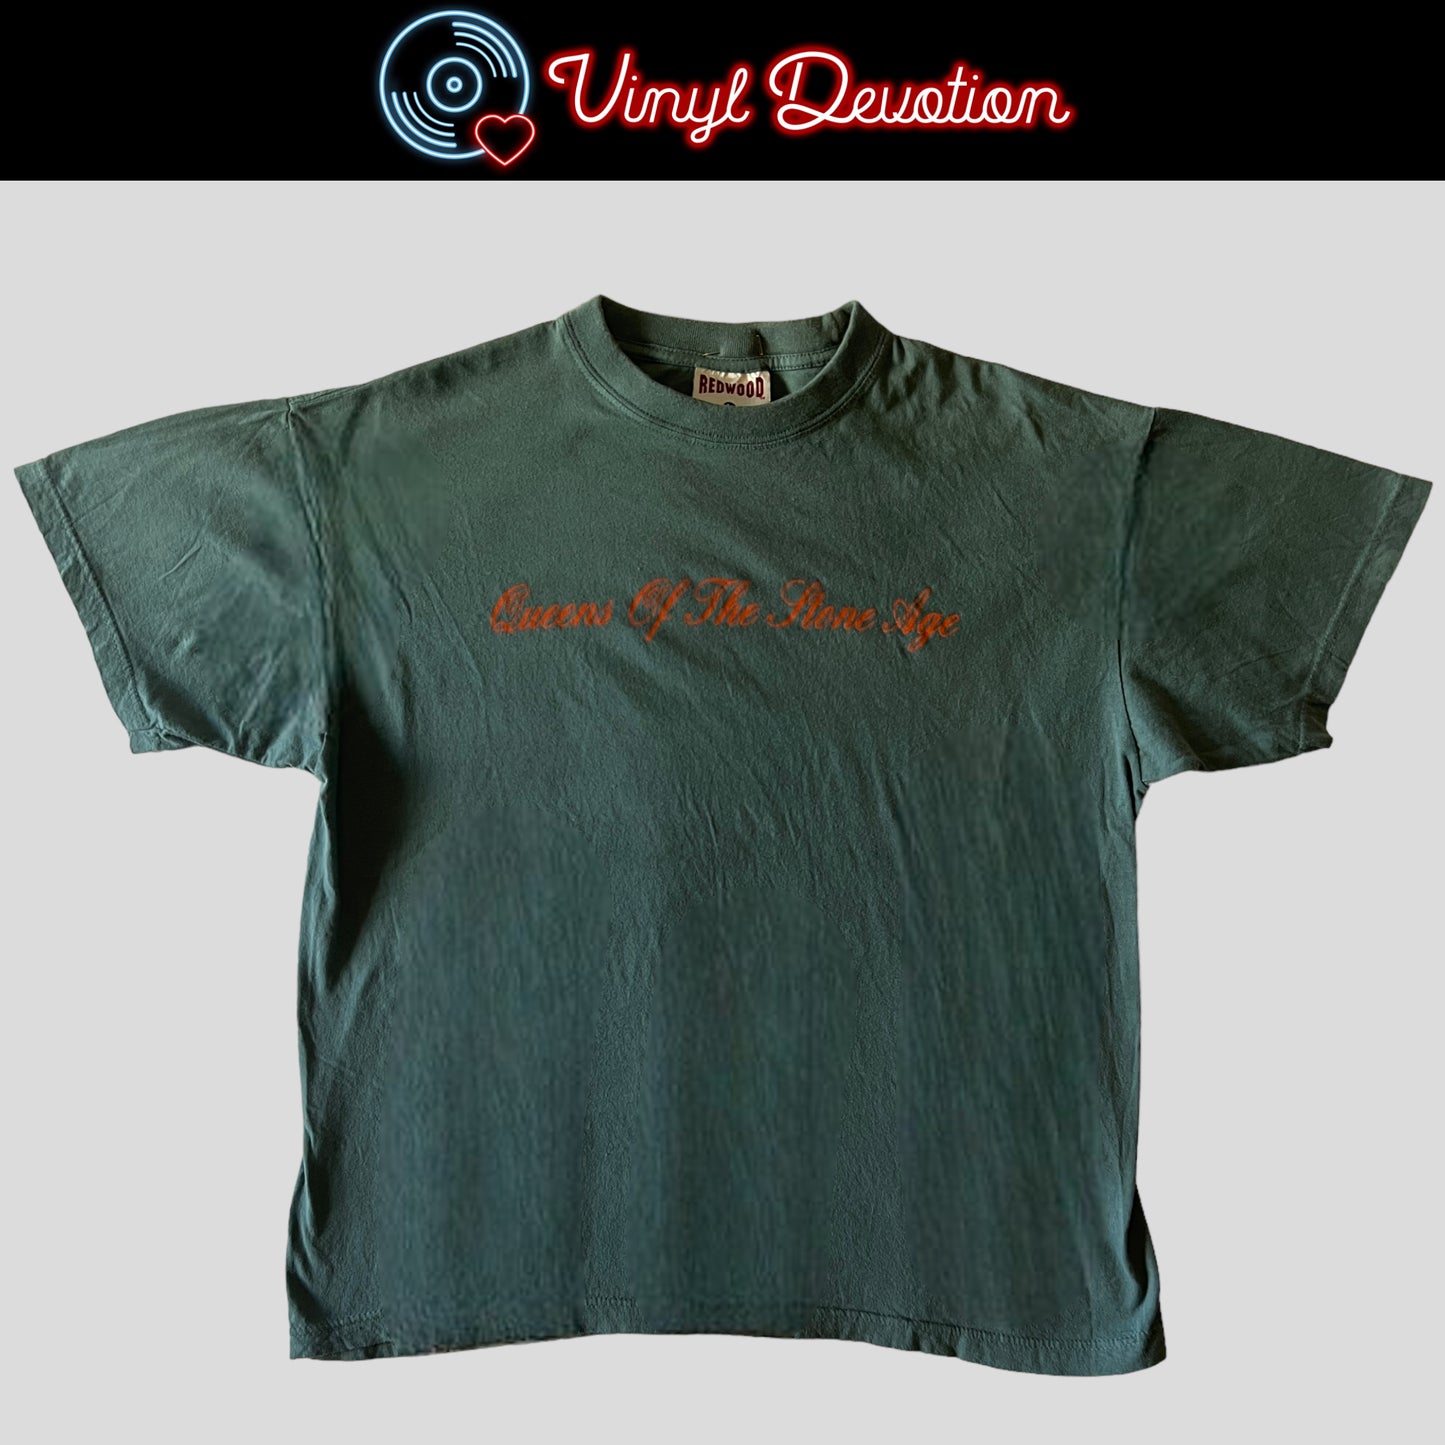 Queens Of The Stone Age 1998 Tour Vintage T-Shirt Size L 18 A.D.